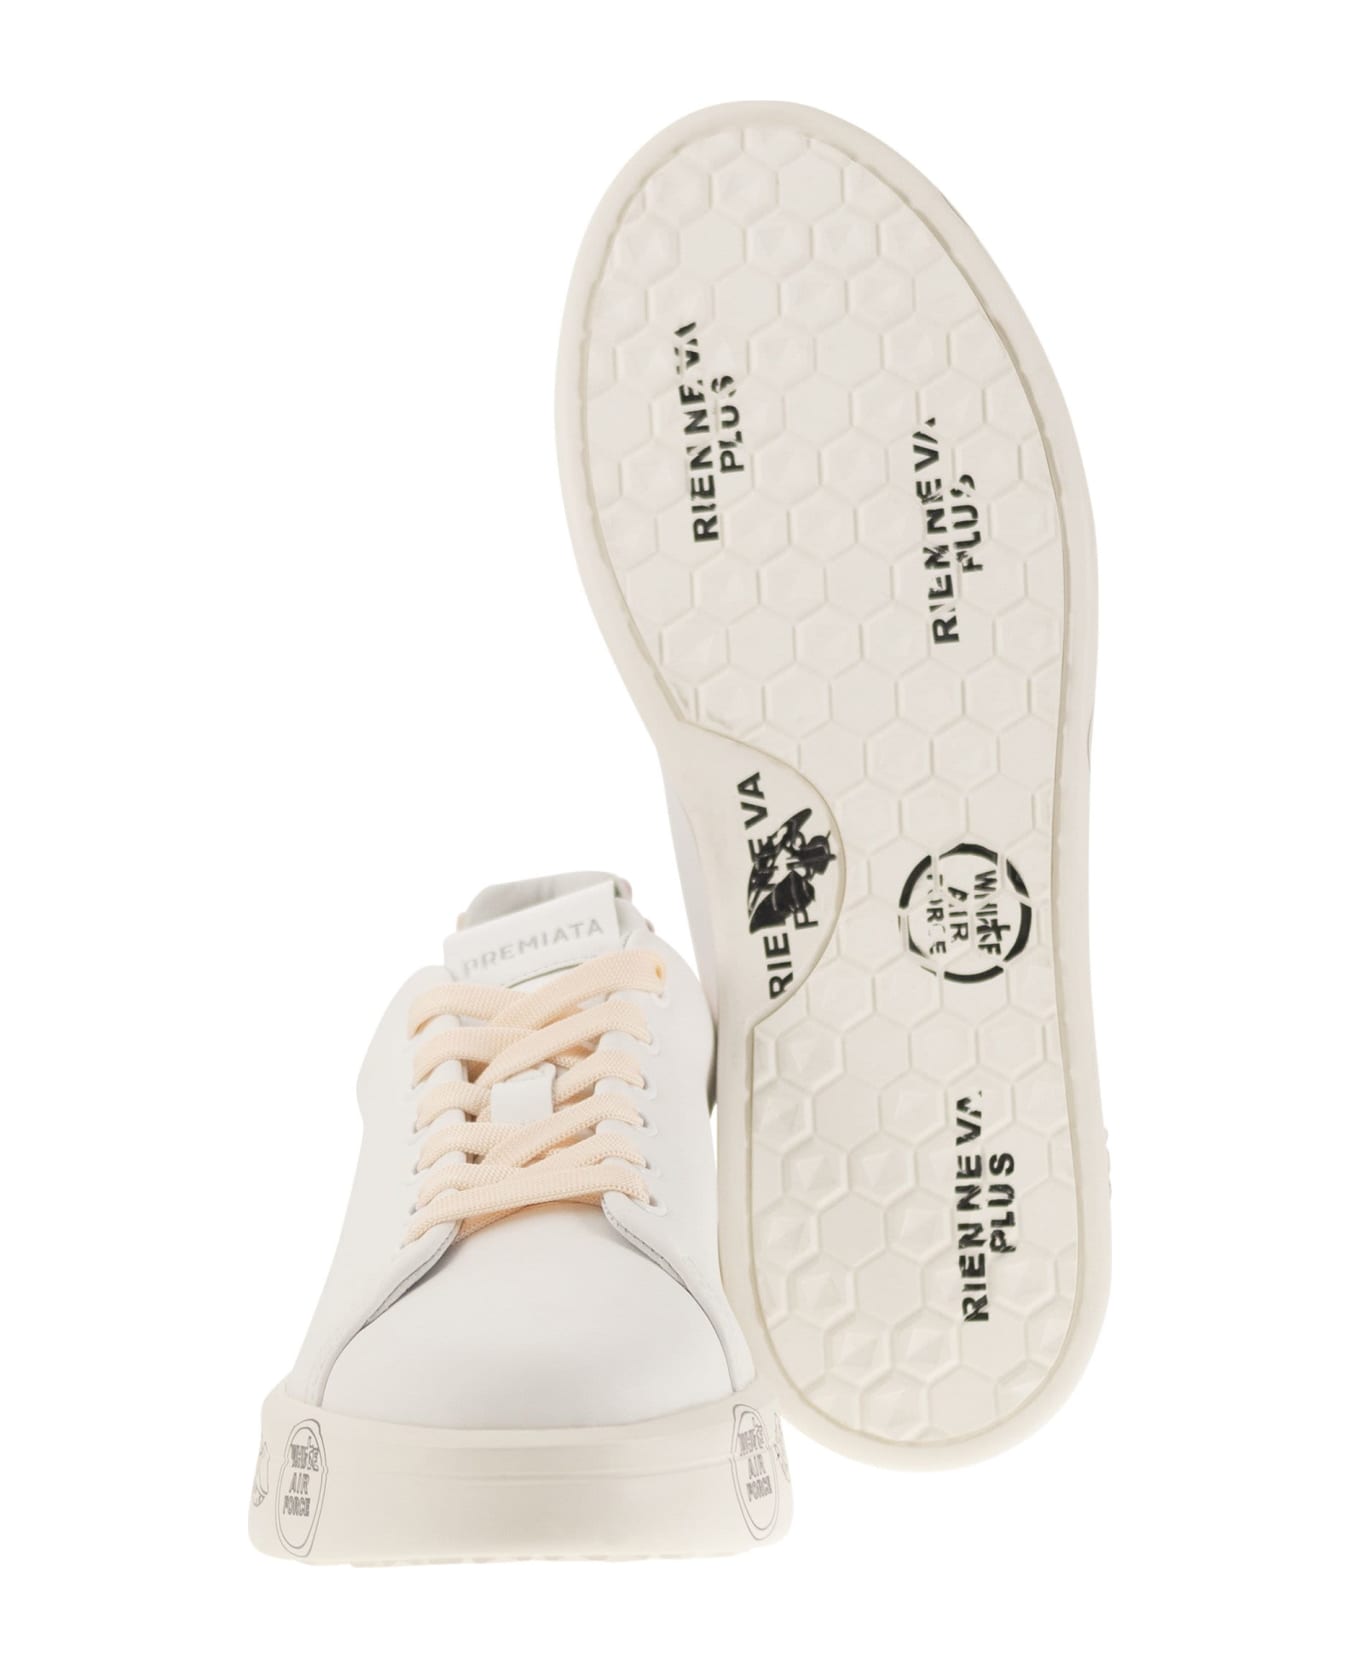 Premiata Belle 6709 Sneakers - White スニーカー